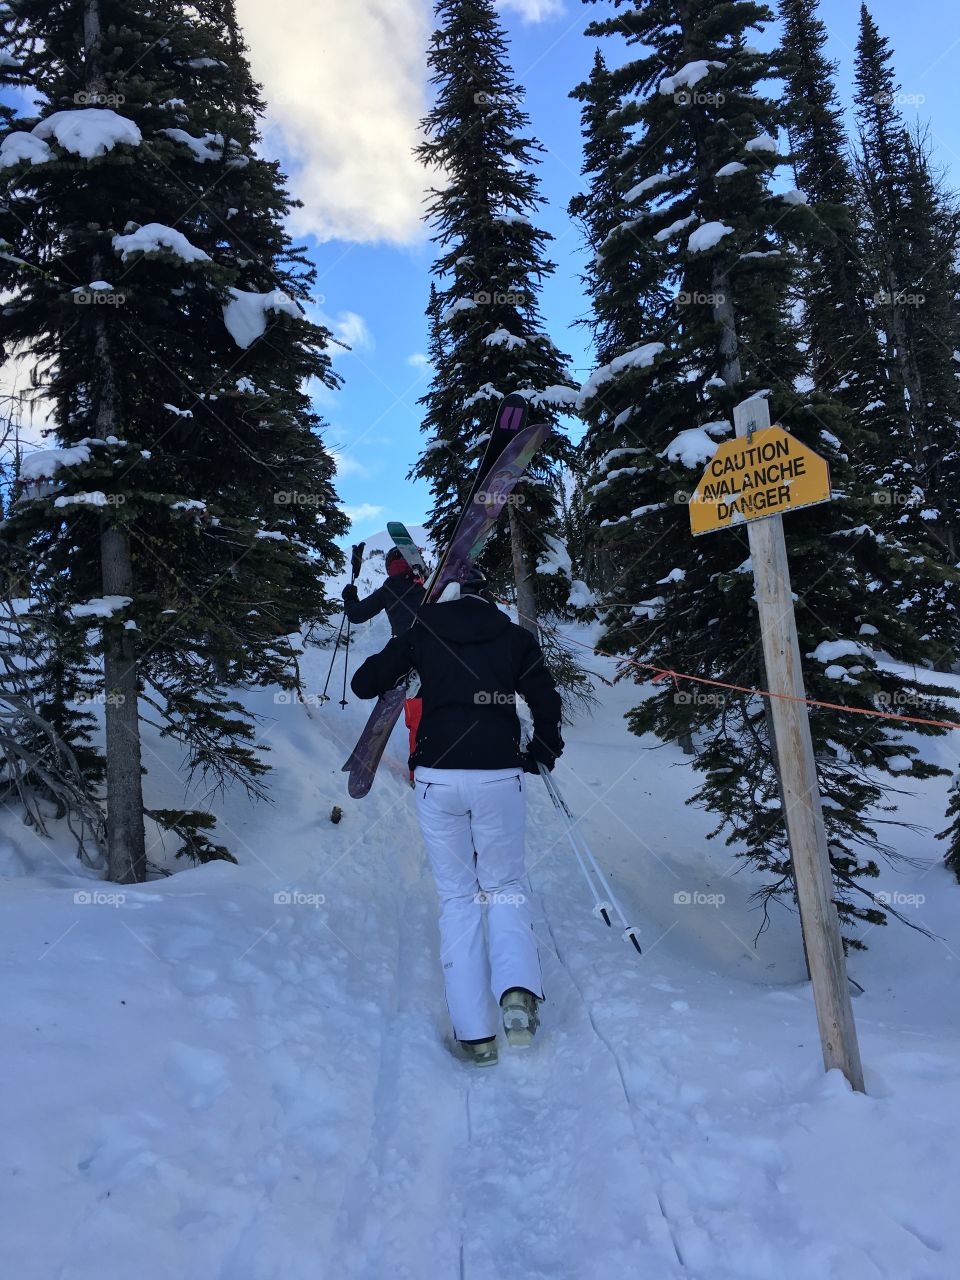 Let ski up here